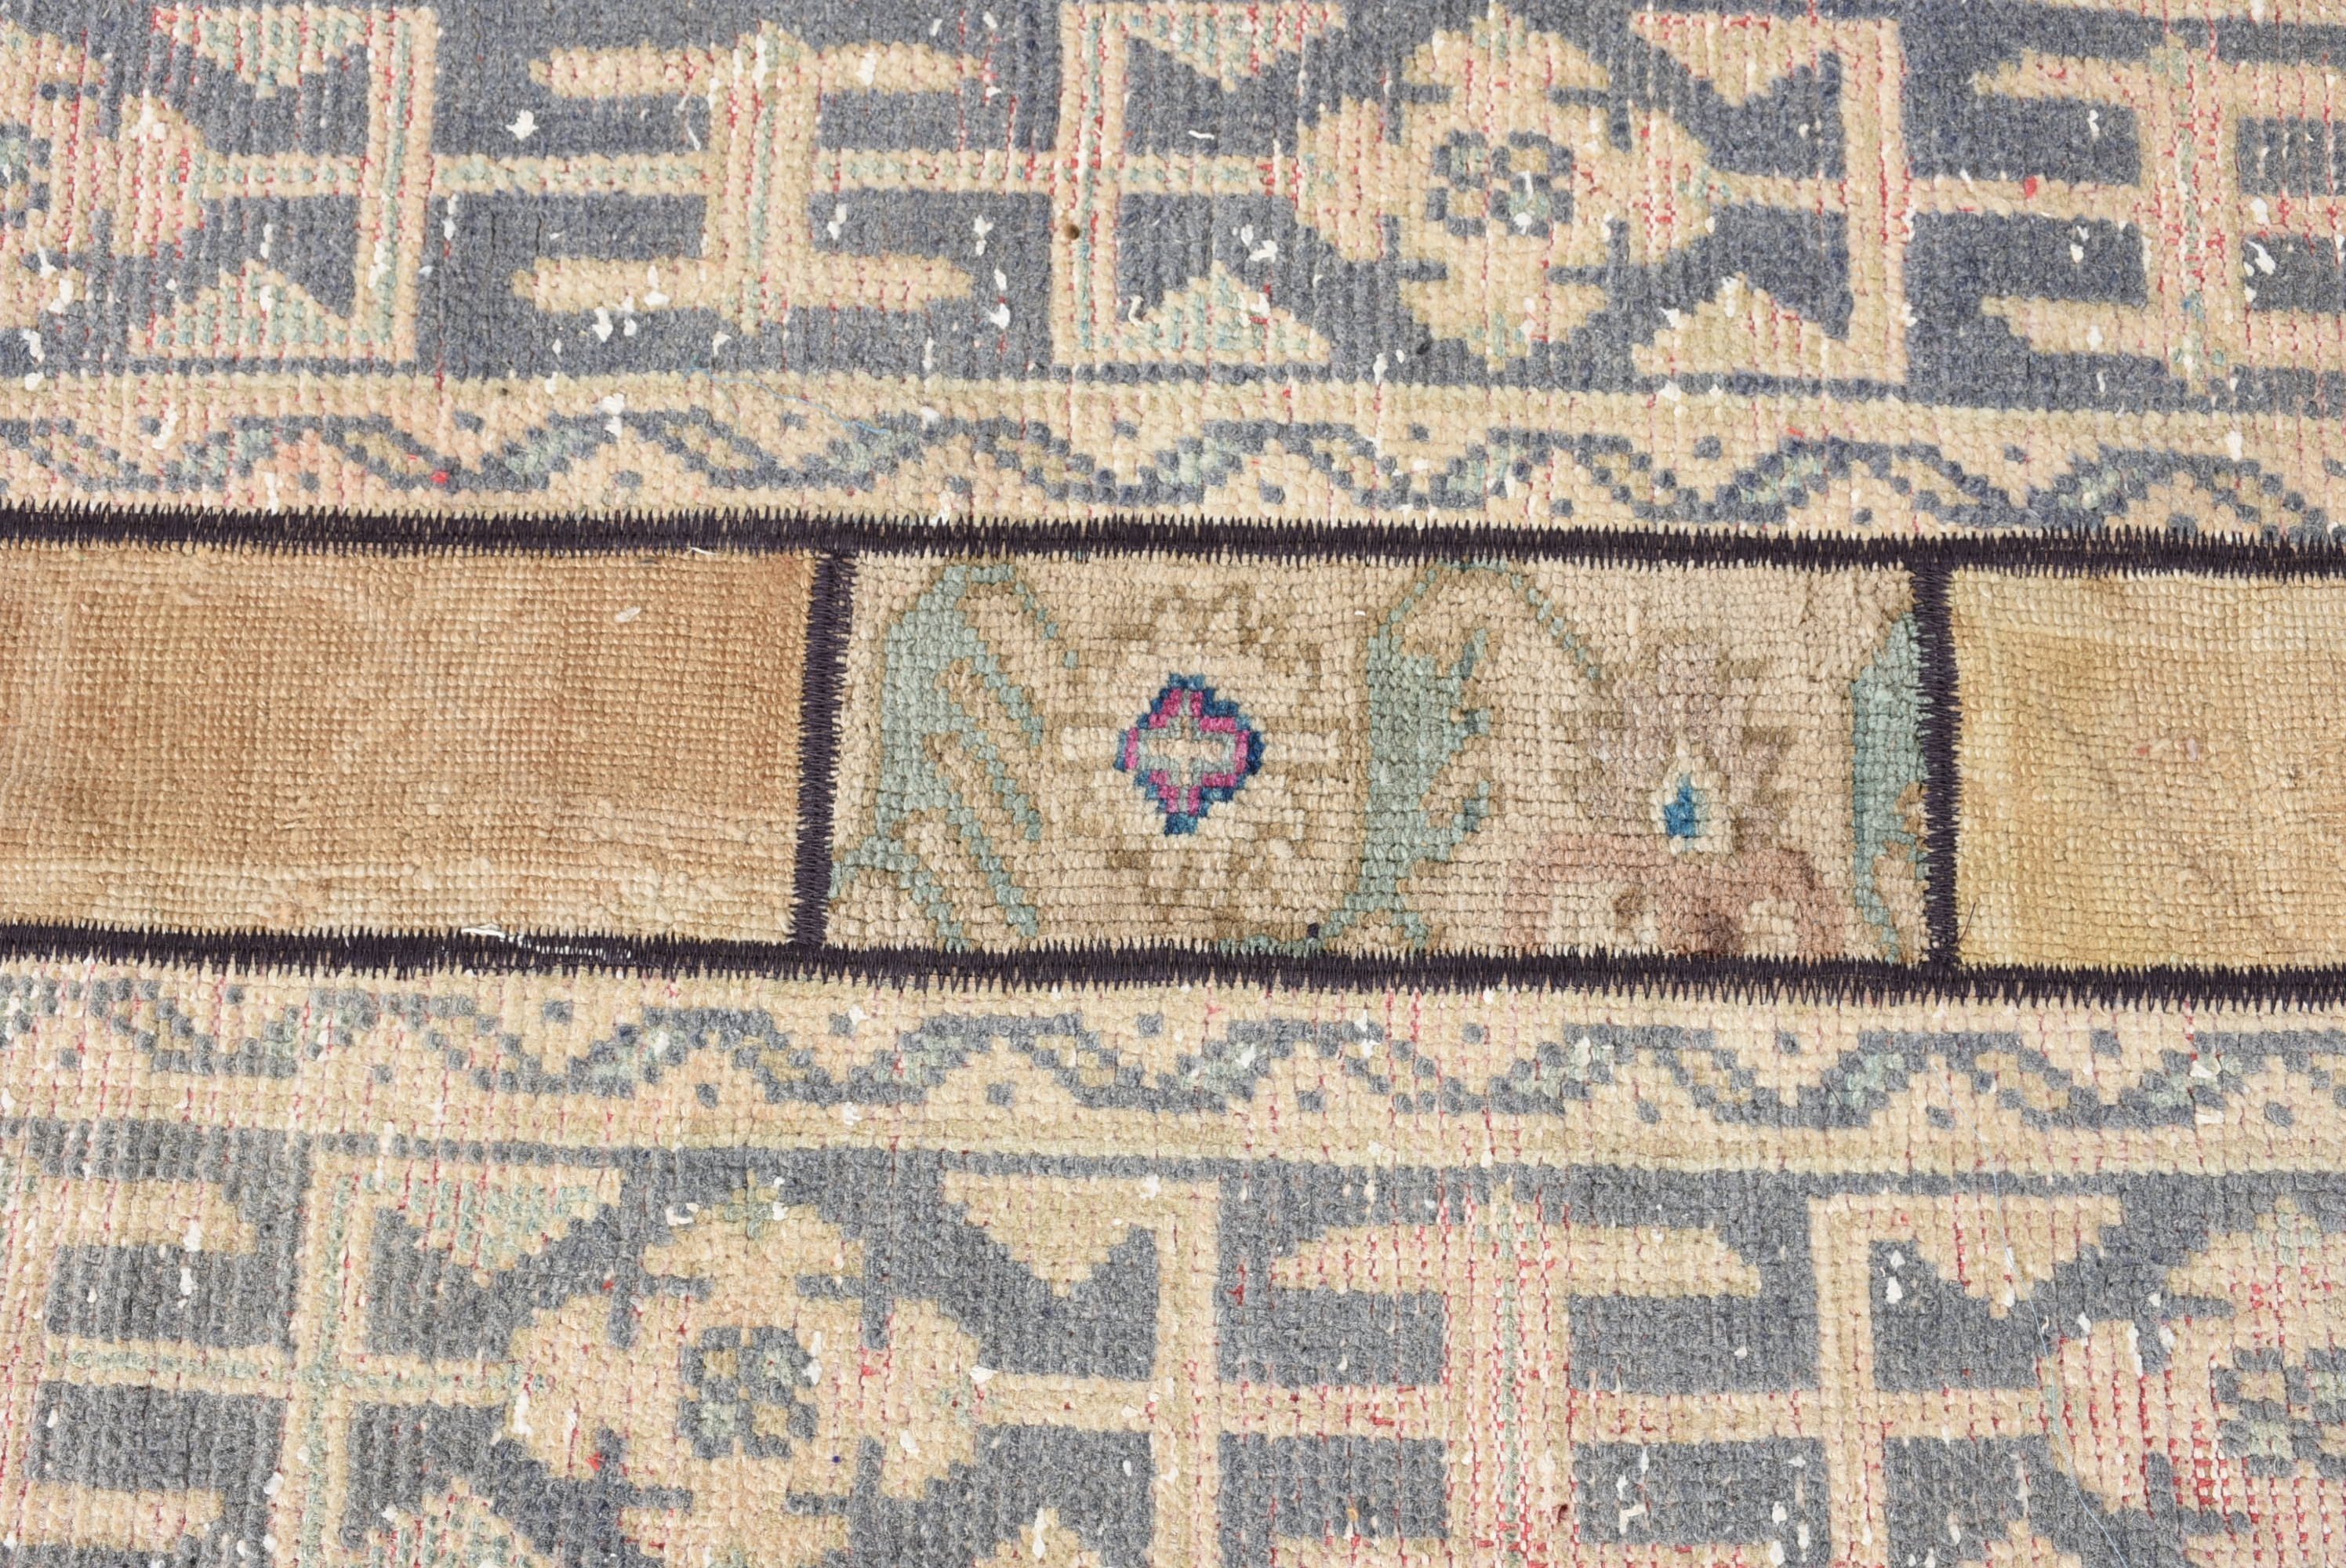 Vintage Rug, 2x3.9 ft Small Rug, Rugs for Car Mat, Antique Rug, Turkish Rug, Oriental Rug, Kitchen Rug, Bath Rug, Beige Oushak Rugs